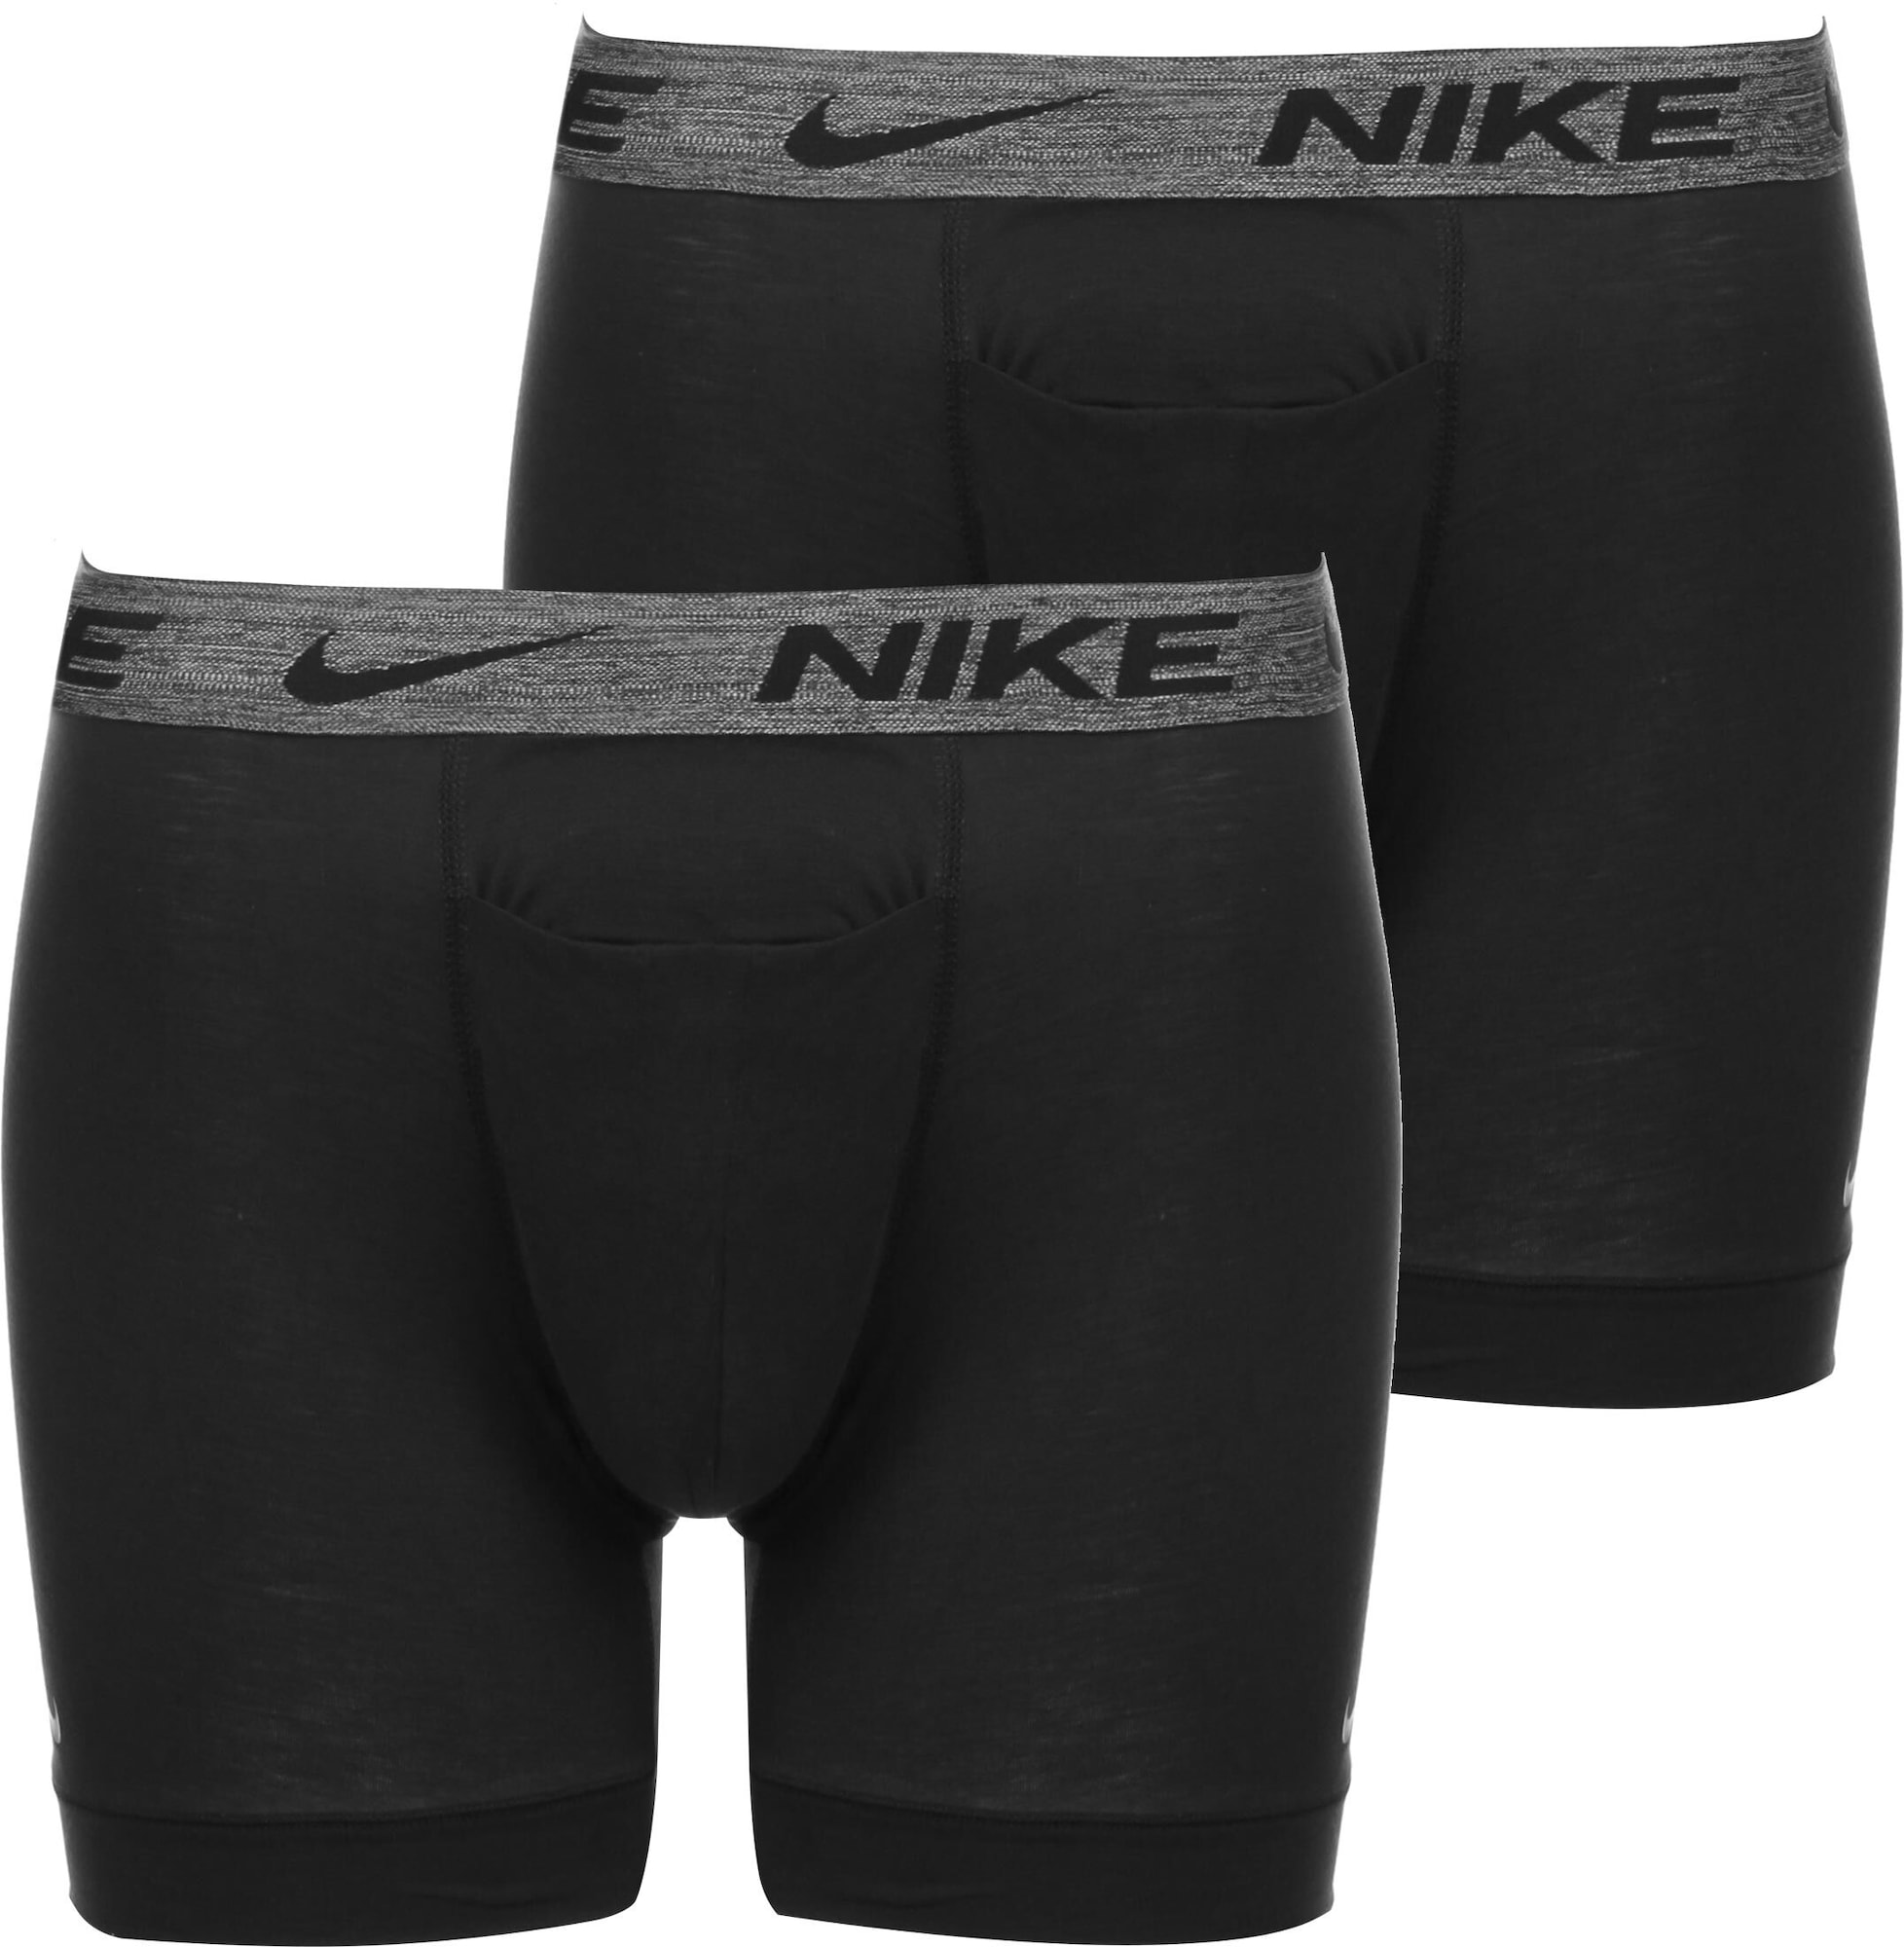 NIKE Sport alsónadrágok  fekete / szürke melír